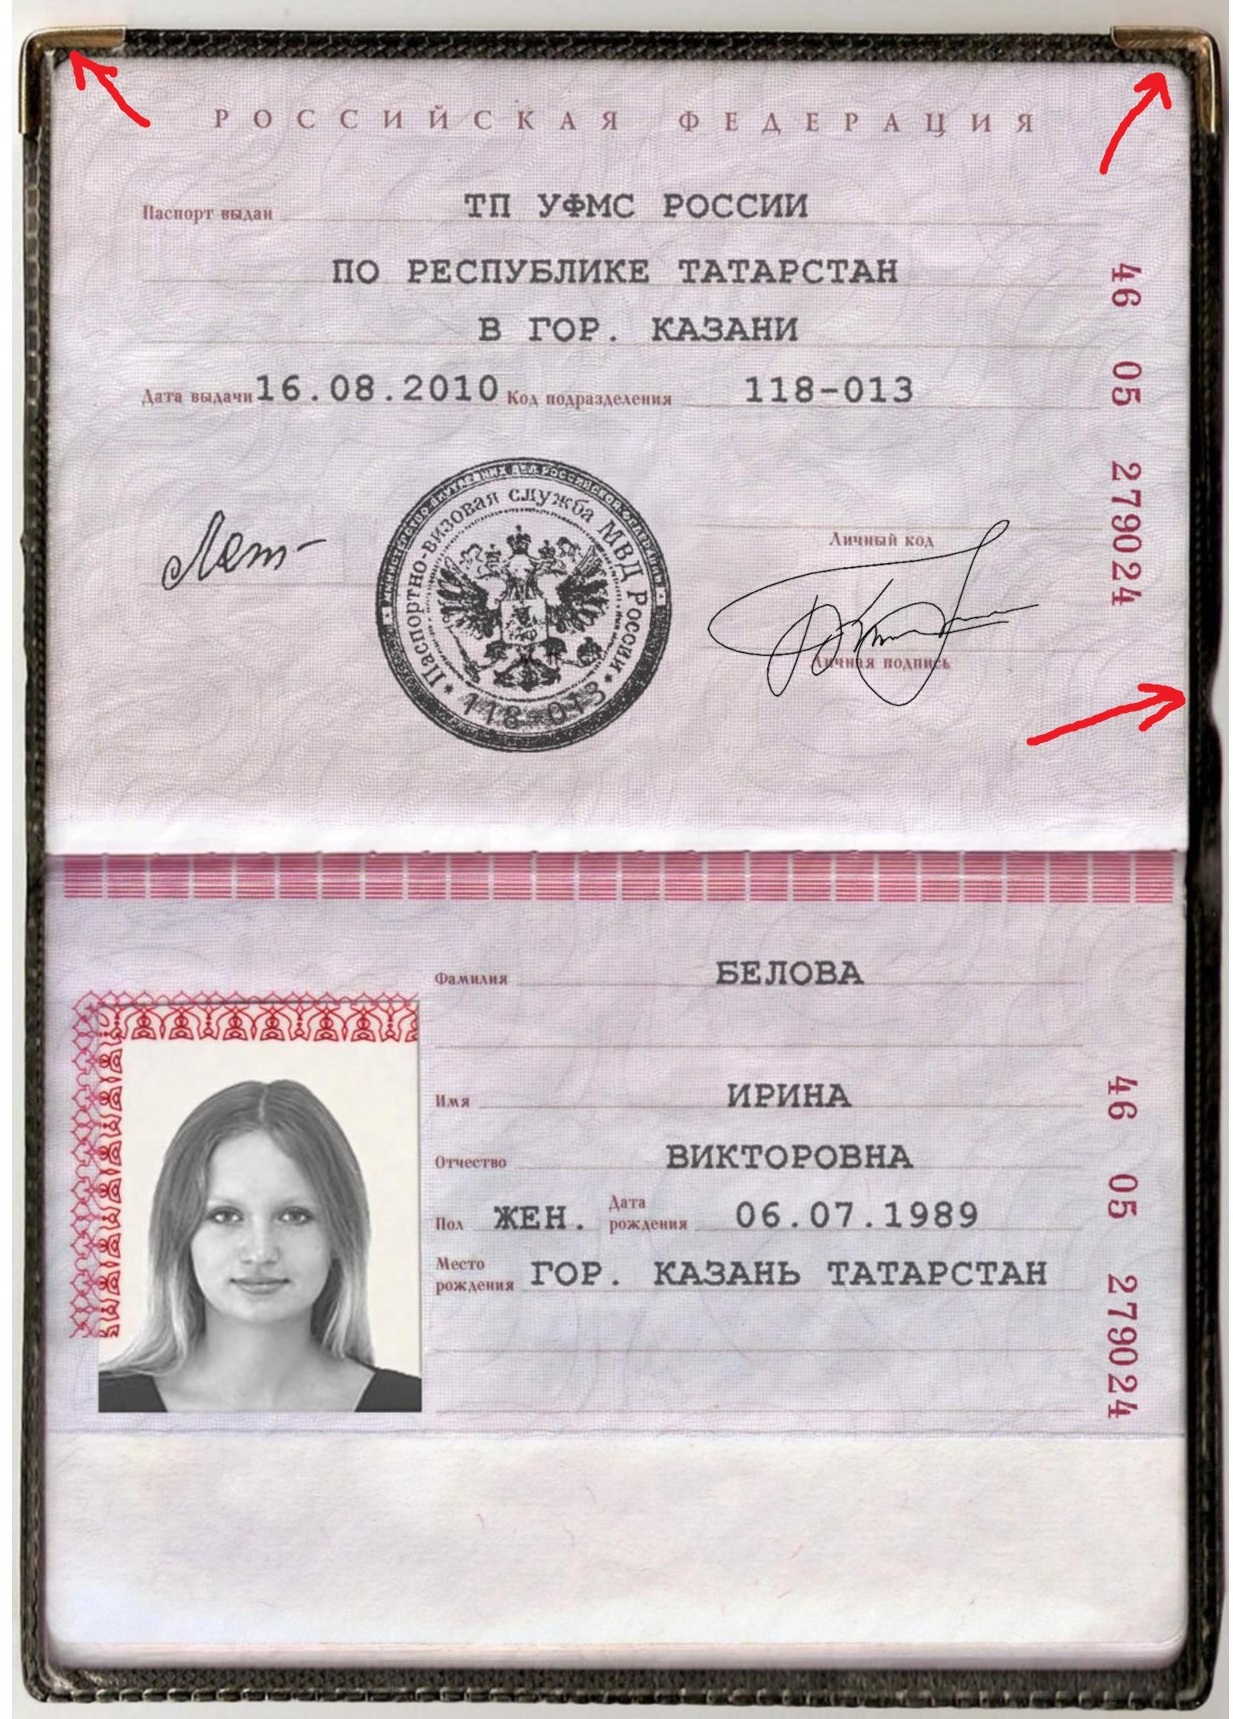 Скан паспорта гражданина РФ